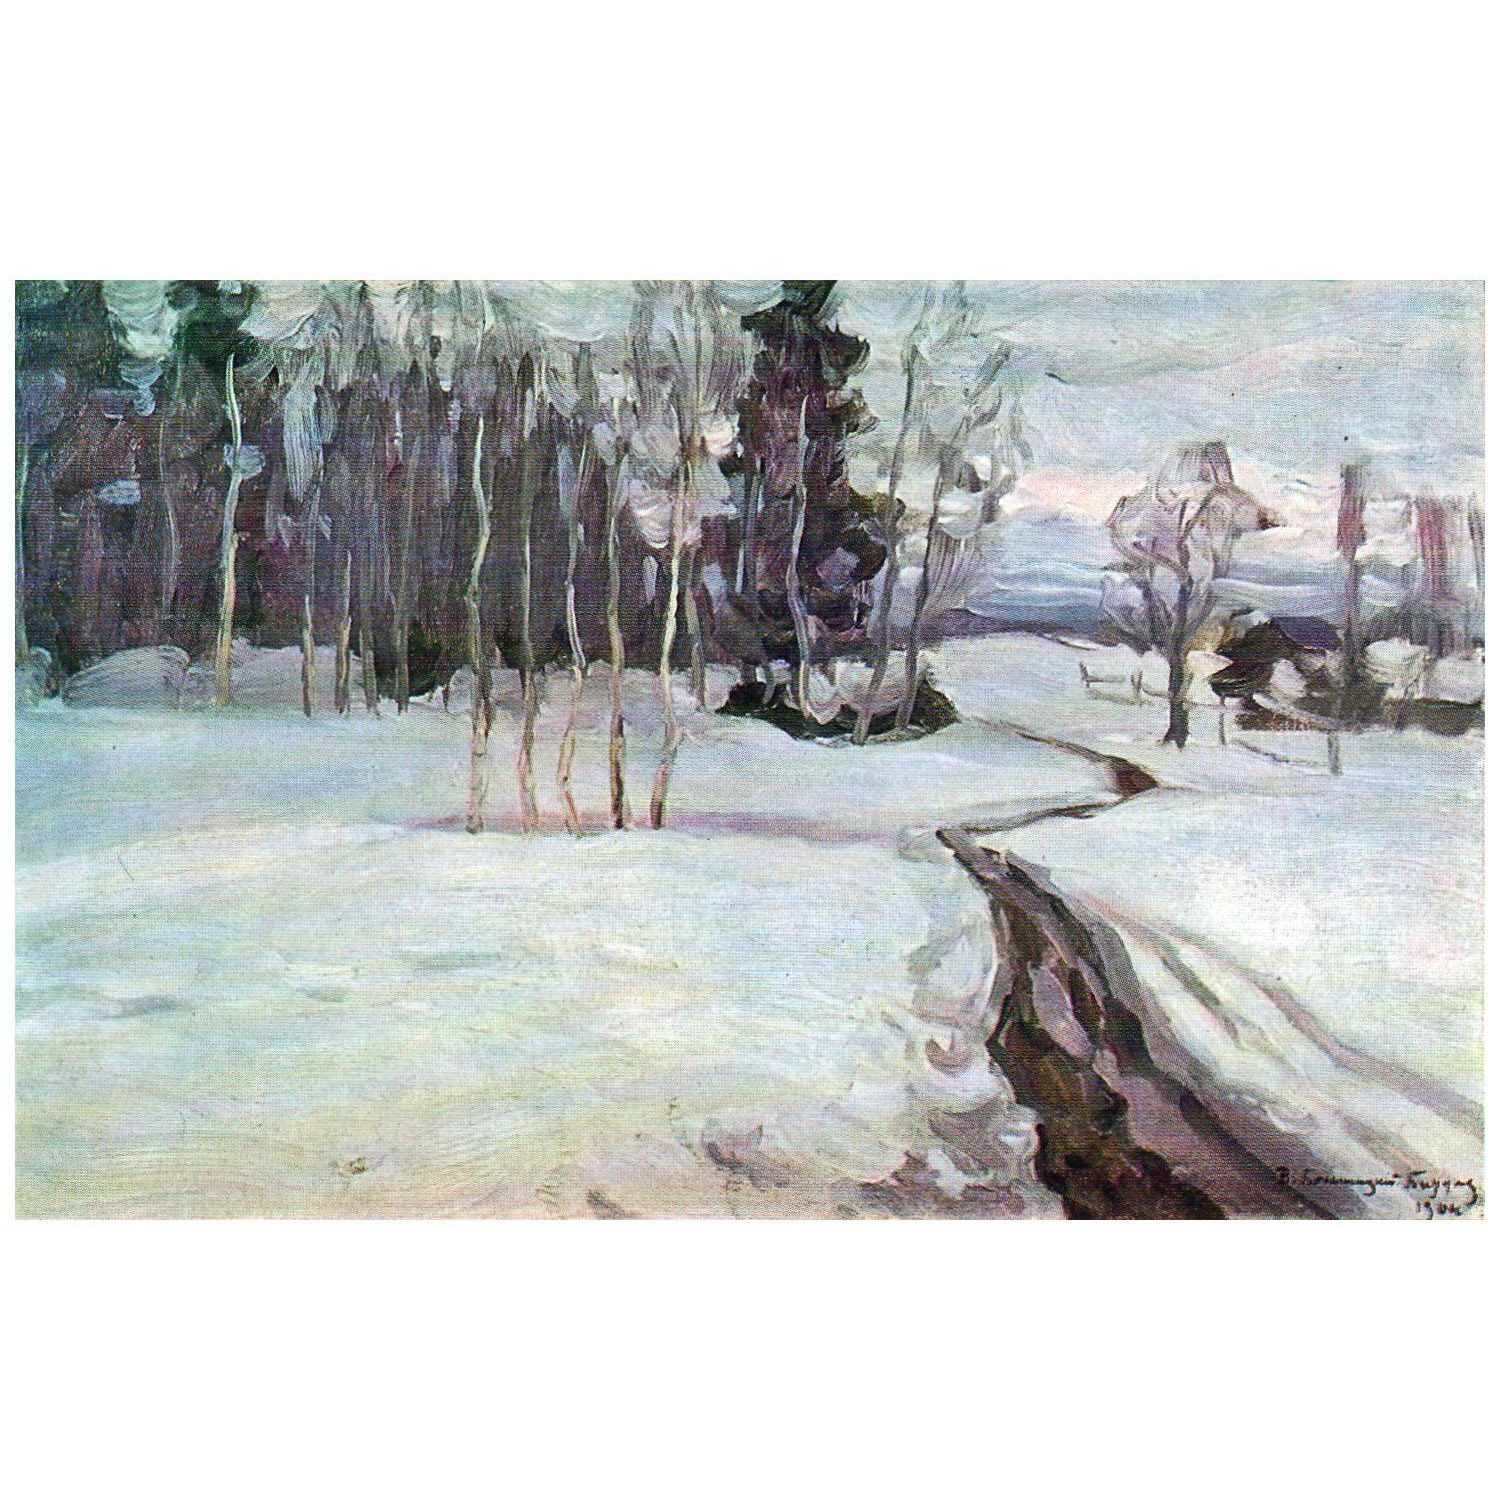 Витольд Бялыницкий-Бируля. Зимний пейзаж. 1912. Тверская картинная галерея